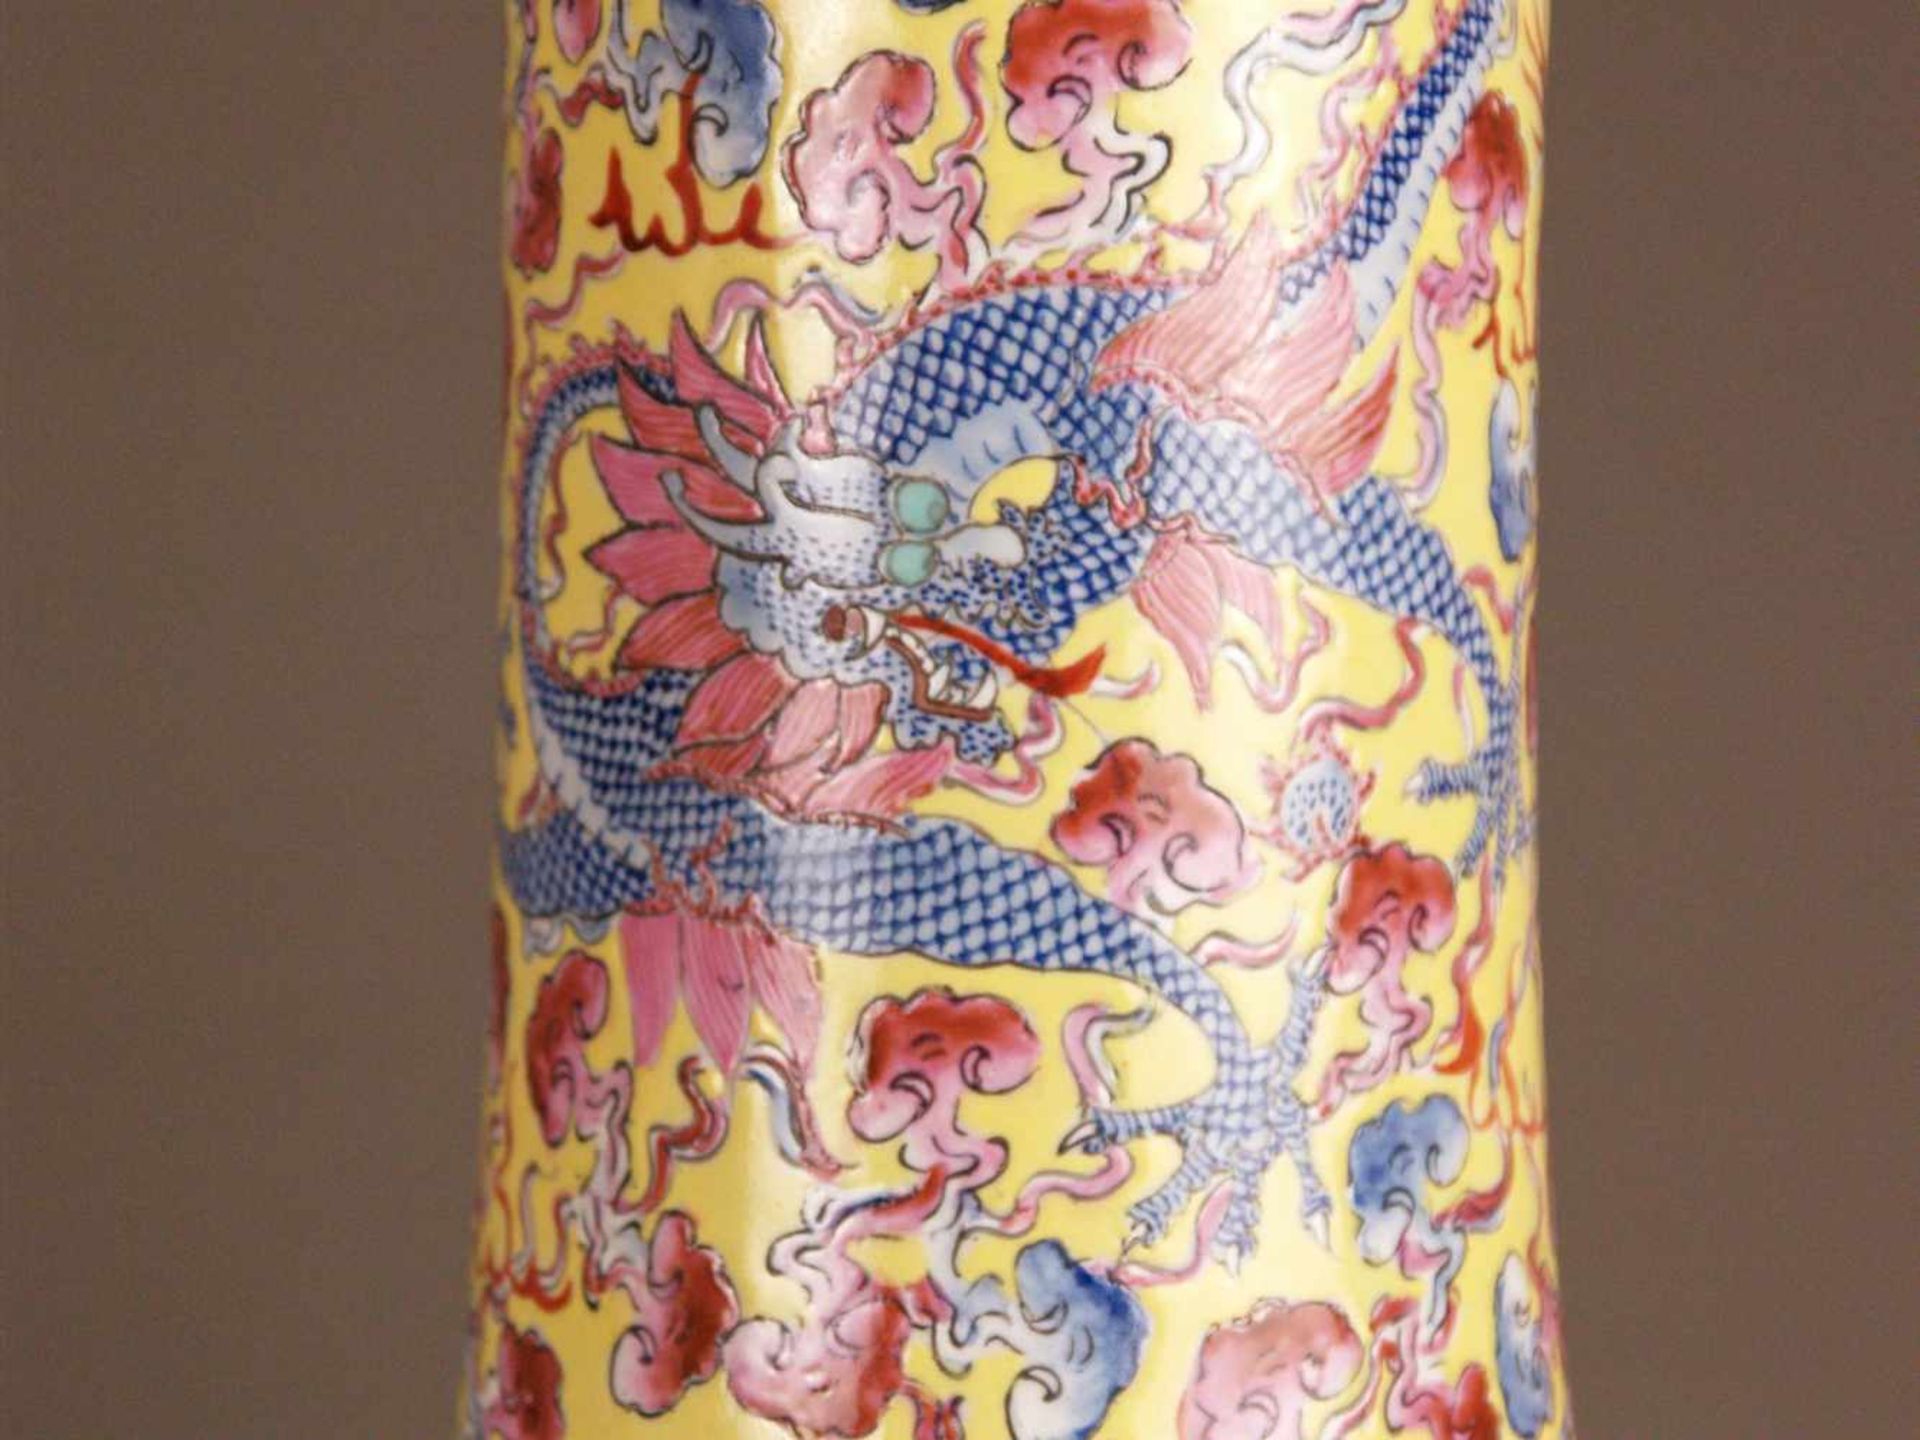 Paar Bodenvasen - China 20.Jh.,Tian qiu ping-Typus, üppiger Dekor in polychromen Emailfarben, auf - Bild 3 aus 15